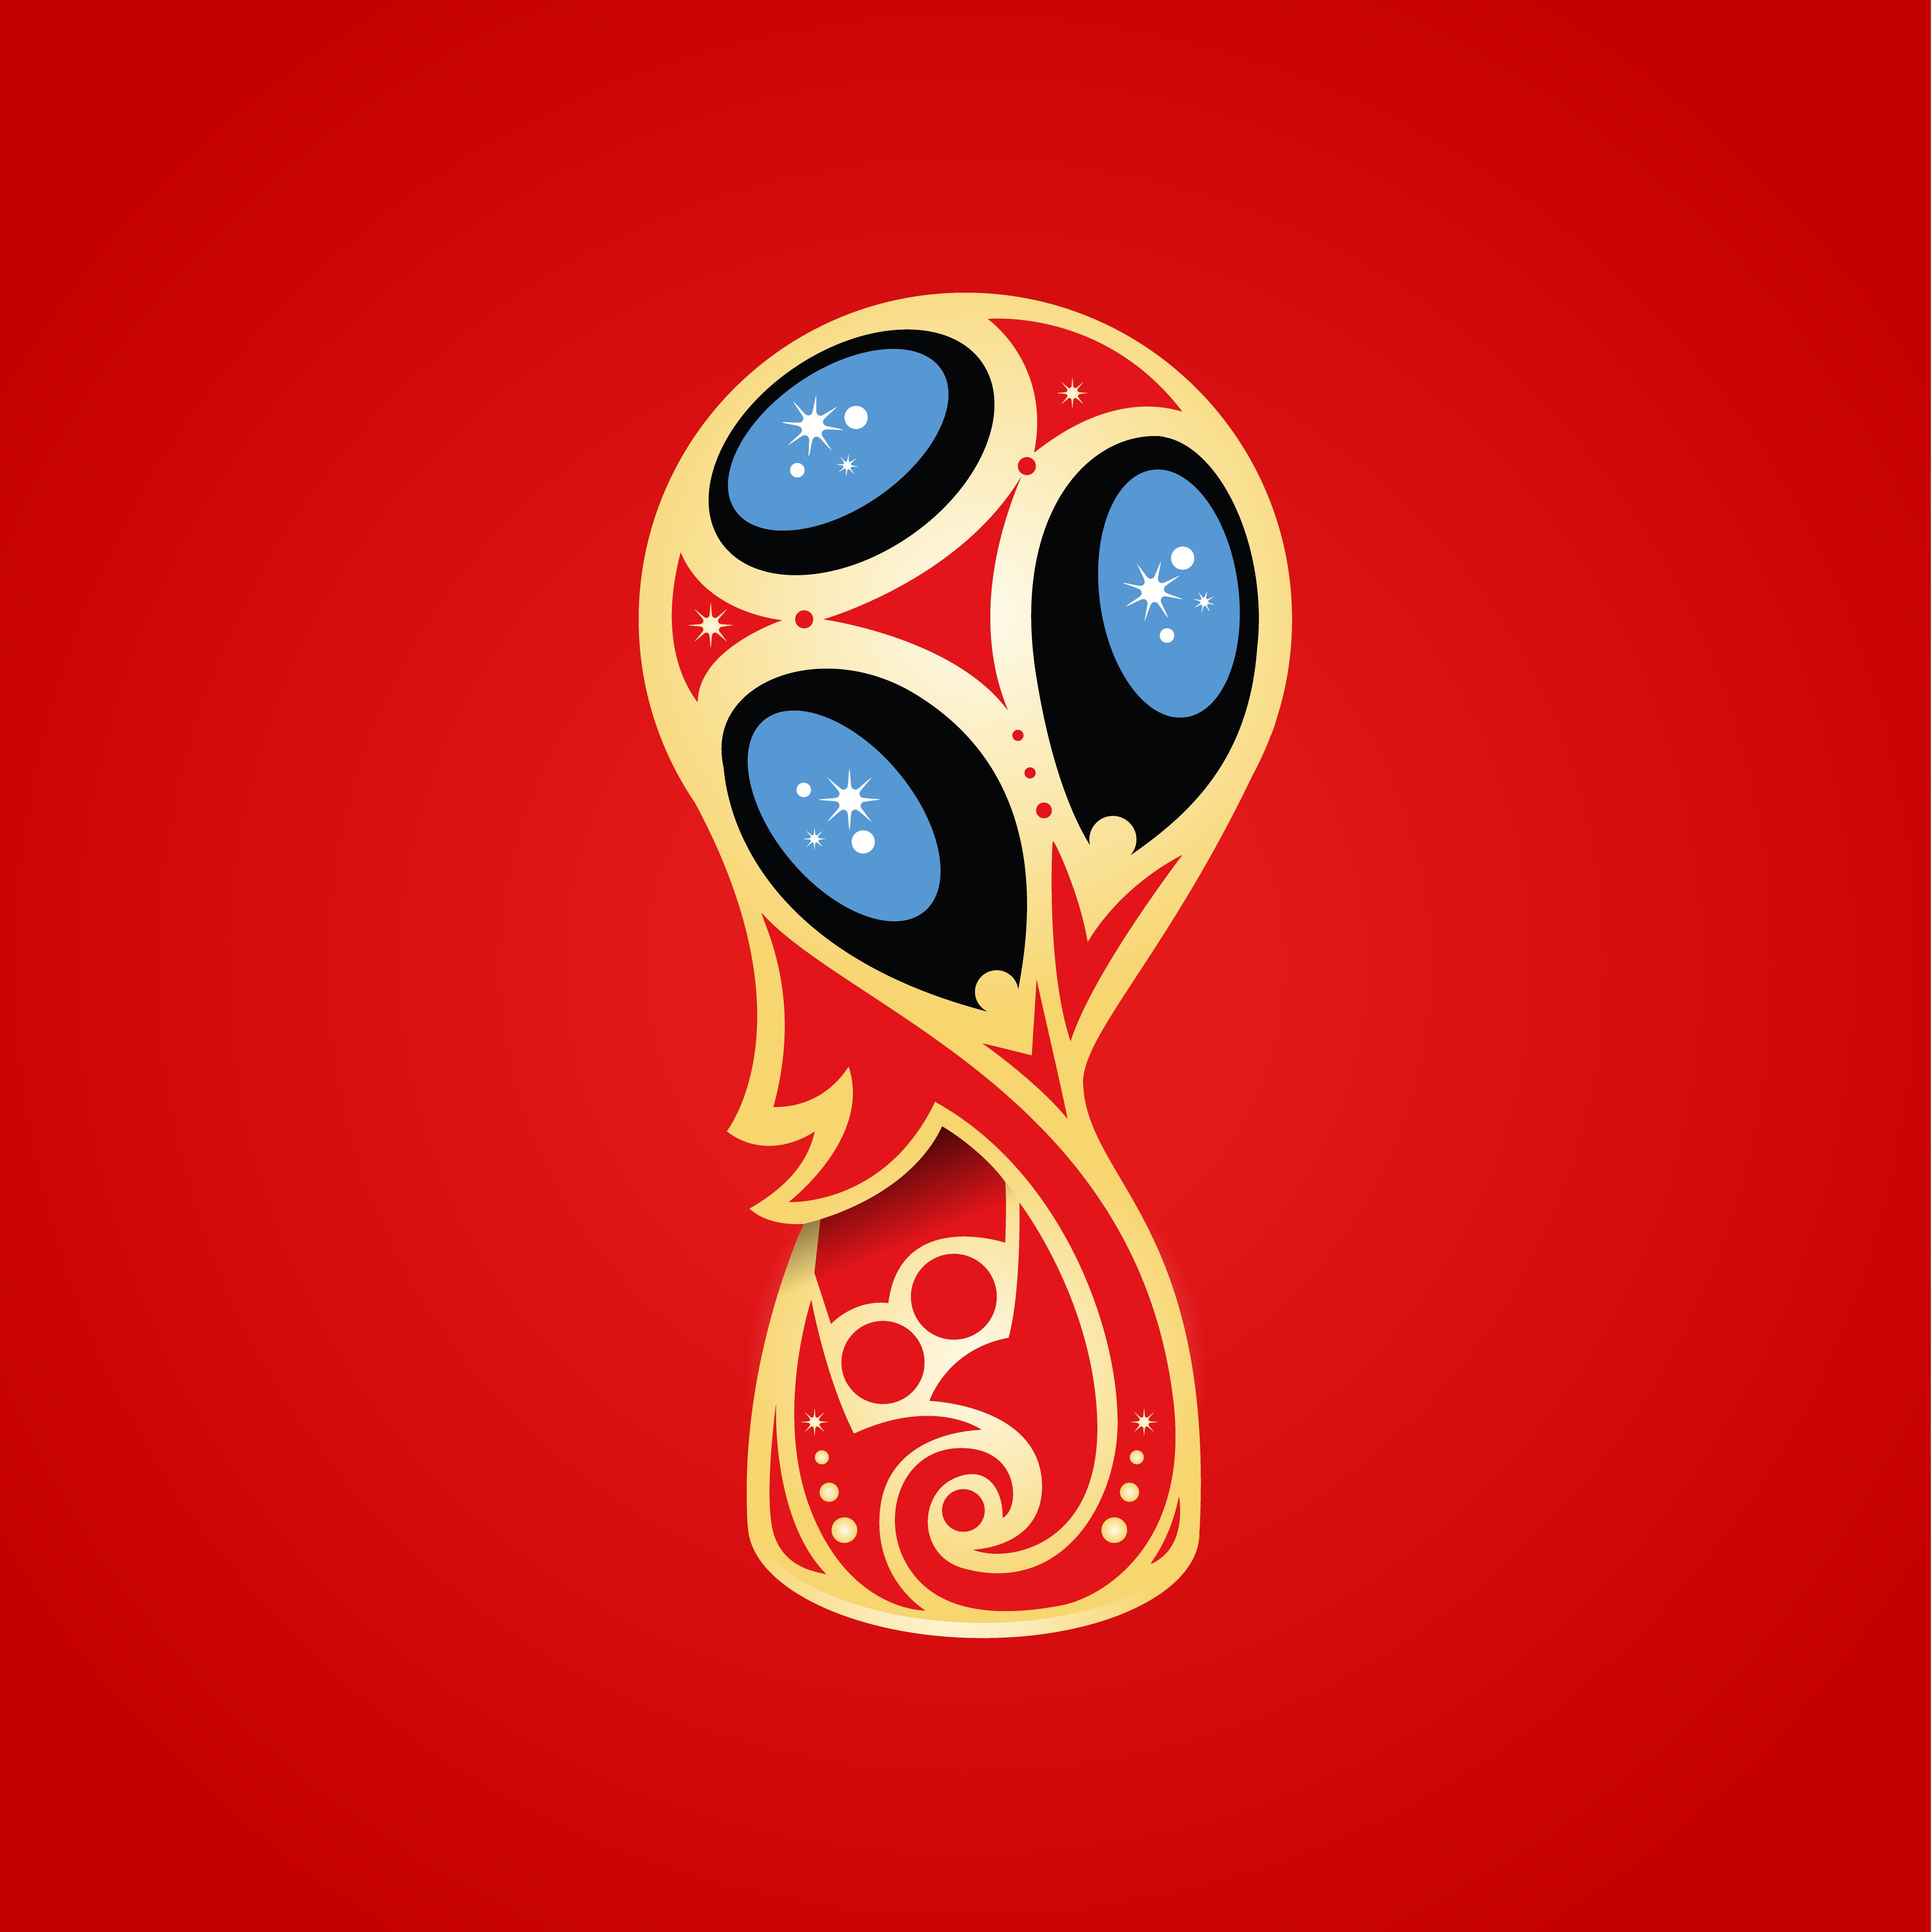 Чемпионат fifa. FIFA World Cup Russia 2018. FIFA 2018 логотип. ФИФА ворлд кап 2018.